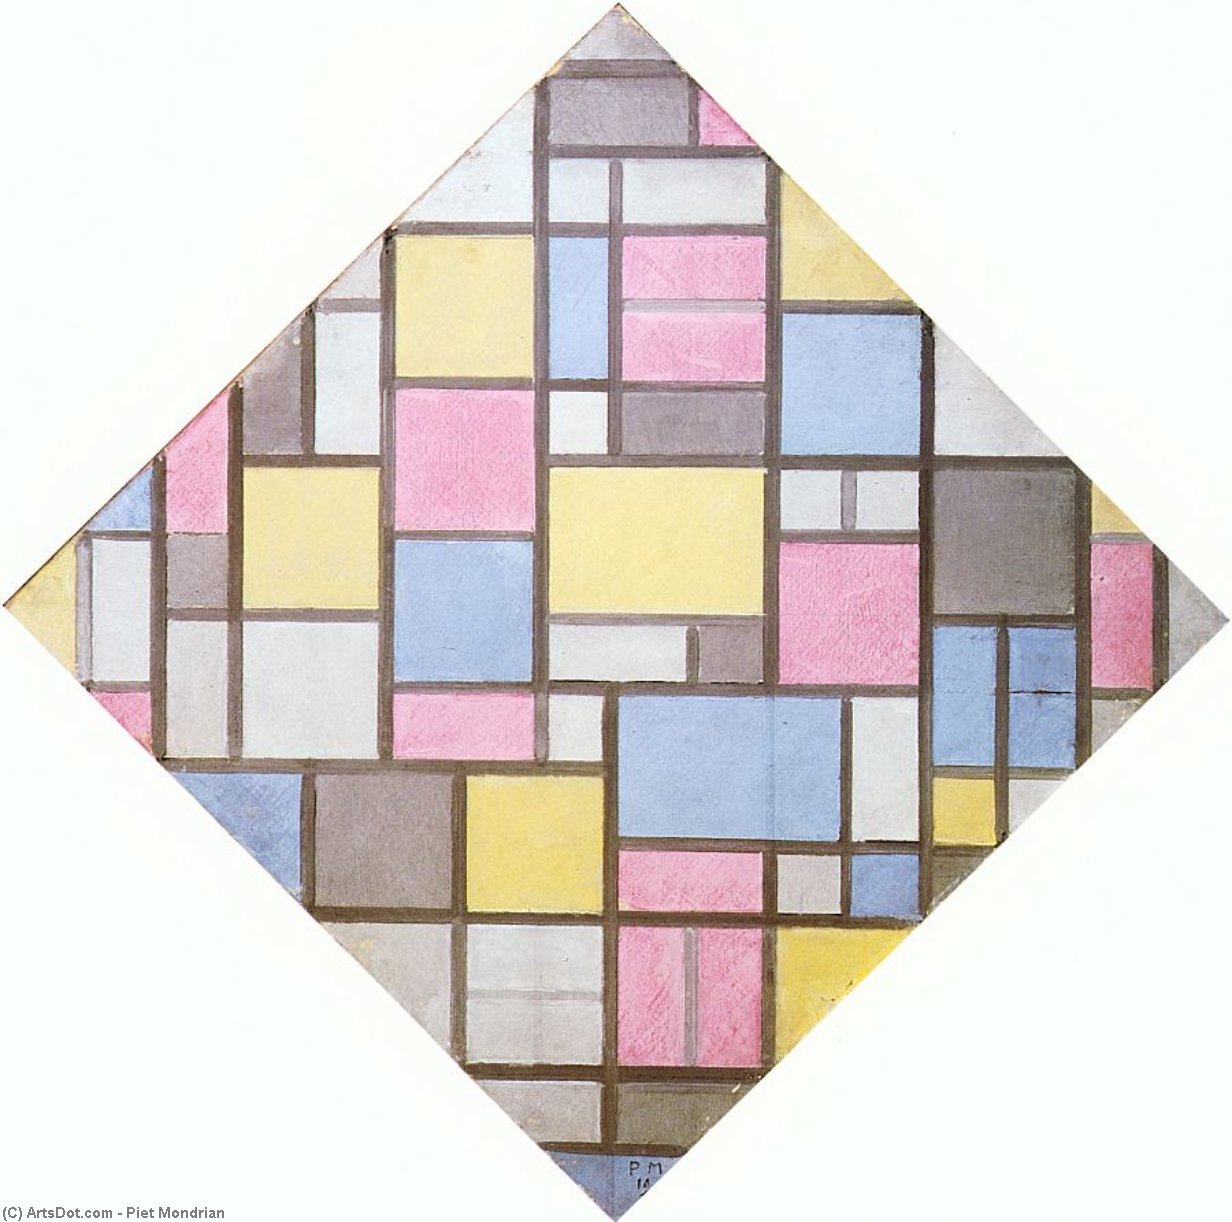 Wikoo.org - موسوعة الفنون الجميلة - اللوحة، العمل الفني Piet Mondrian - Composition with Grid VII